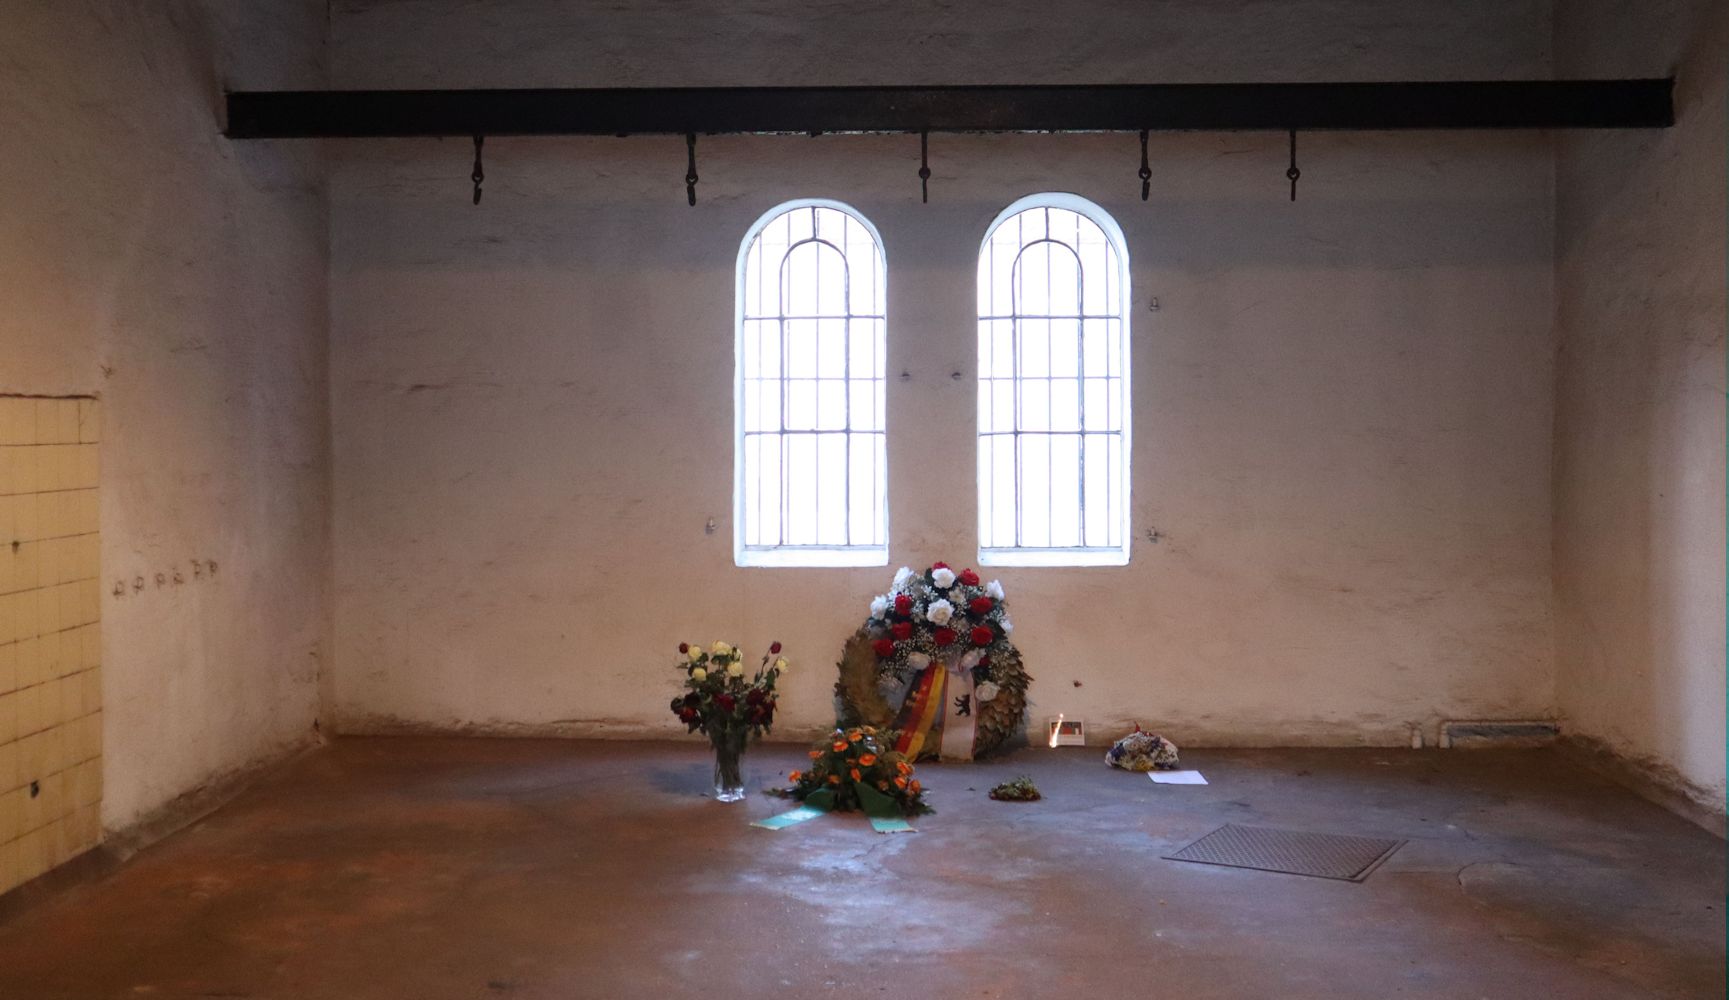 ehemaliger Hinrichtungsraum des Gefängnisses Plötzensee in Berlin